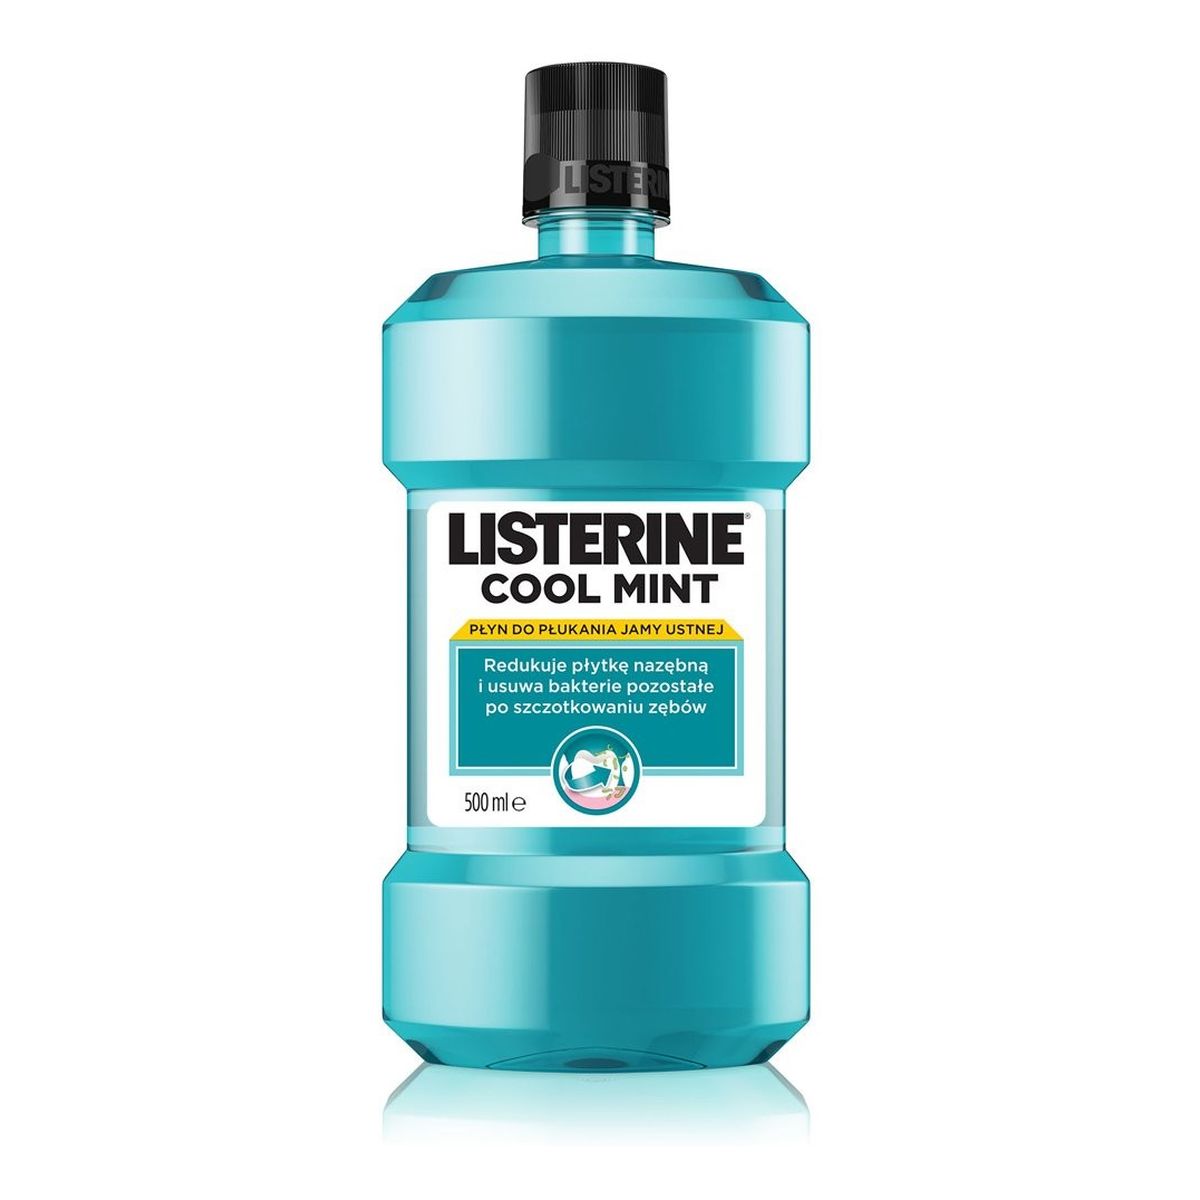 Listerine Coolmint płyn do płukania jamy ustnej (5+1) 500ml